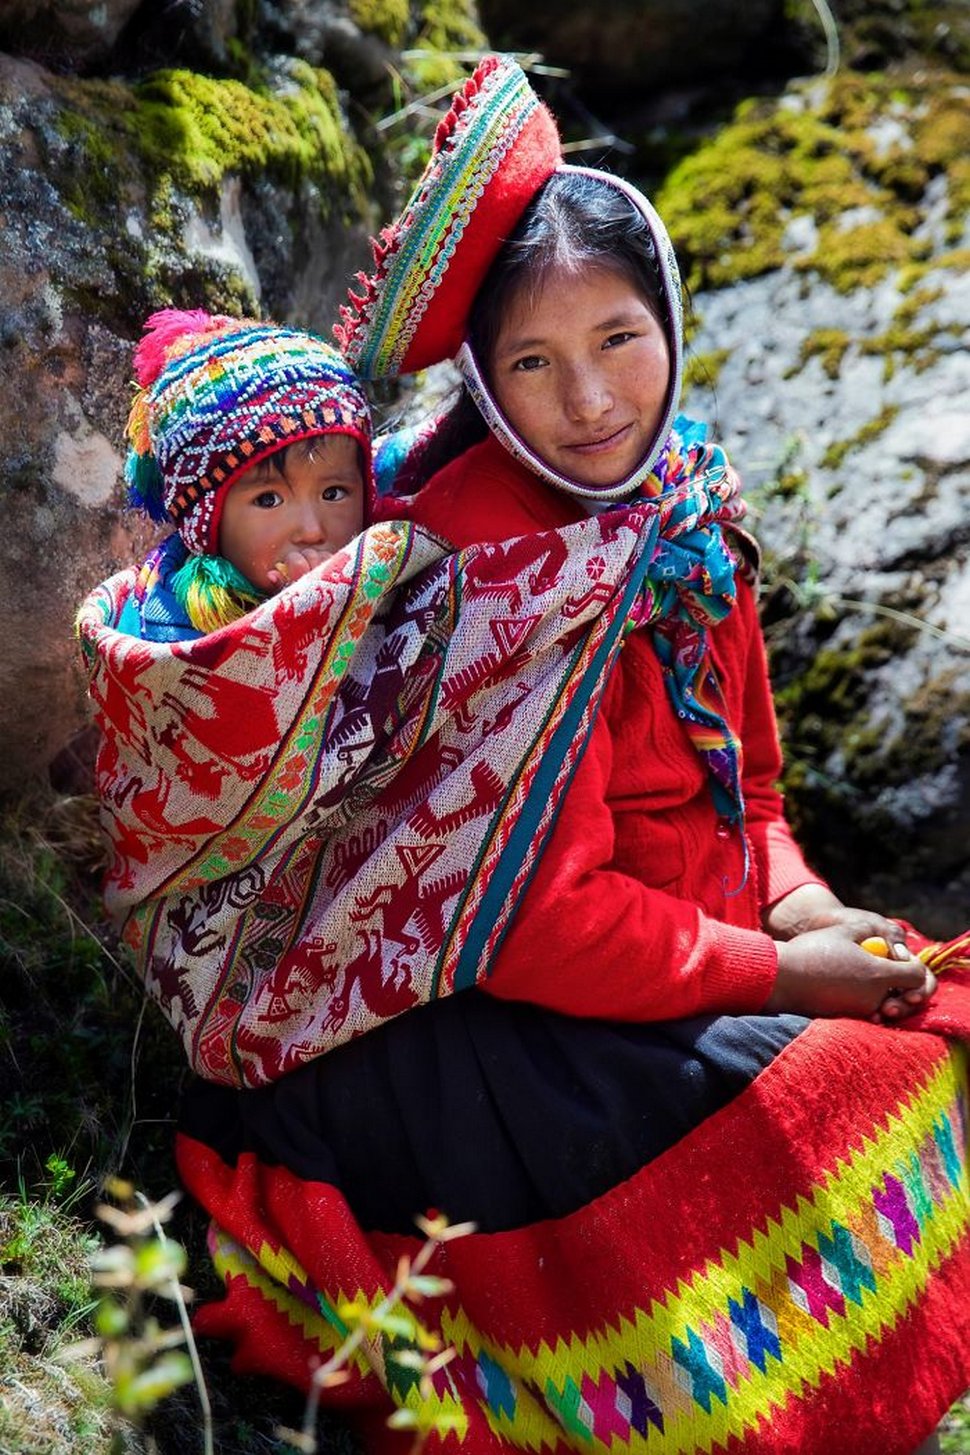 Cette photographe présente la beauté de la maternité en 26 clichés capturés à travers le monde